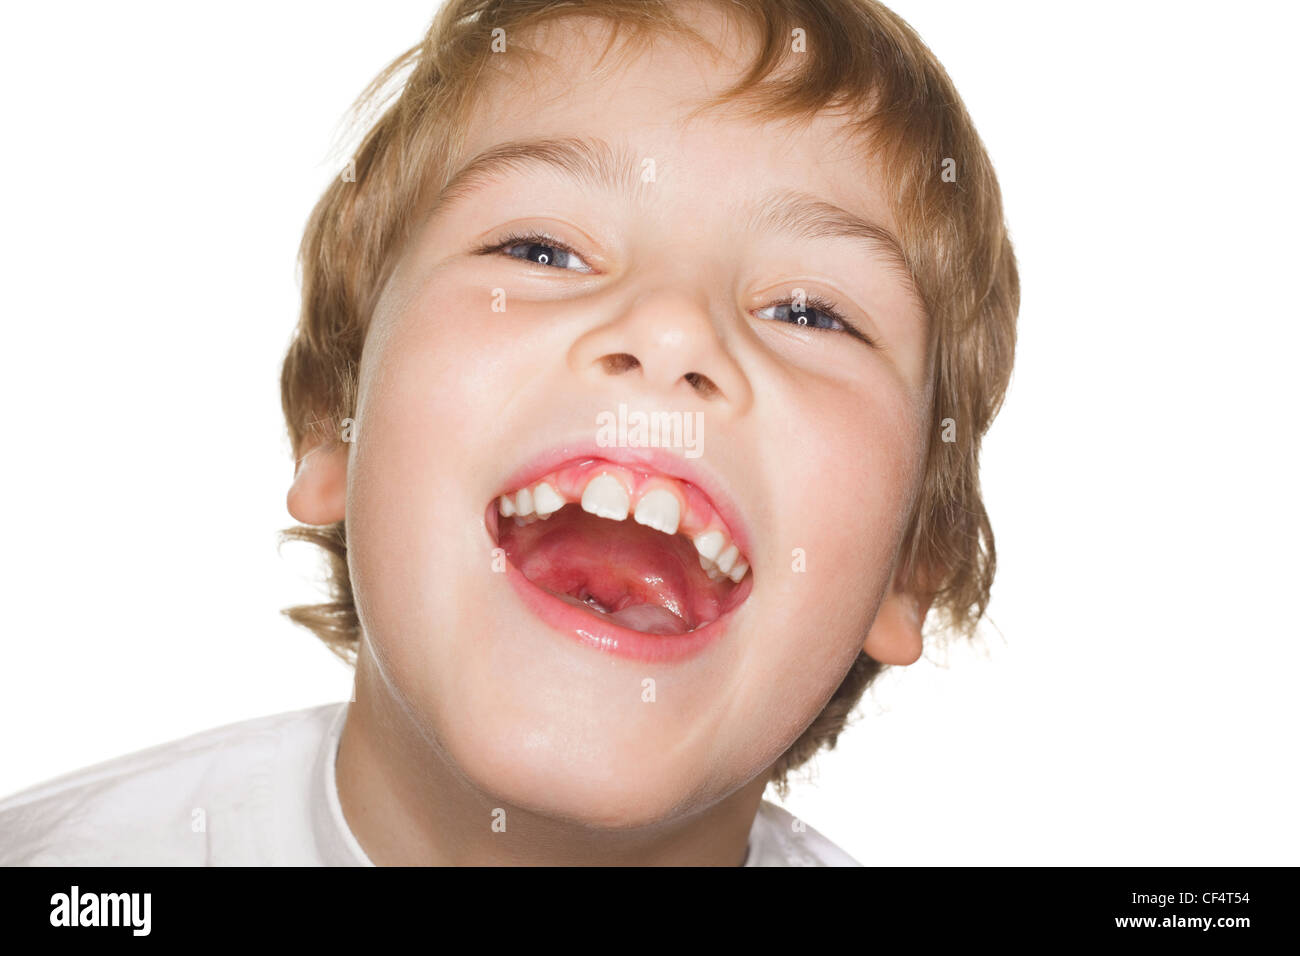 Porträt Kleinkind in einem weißen T-shirt Fotostudio, Mund öffnen. Lachen Stockfoto